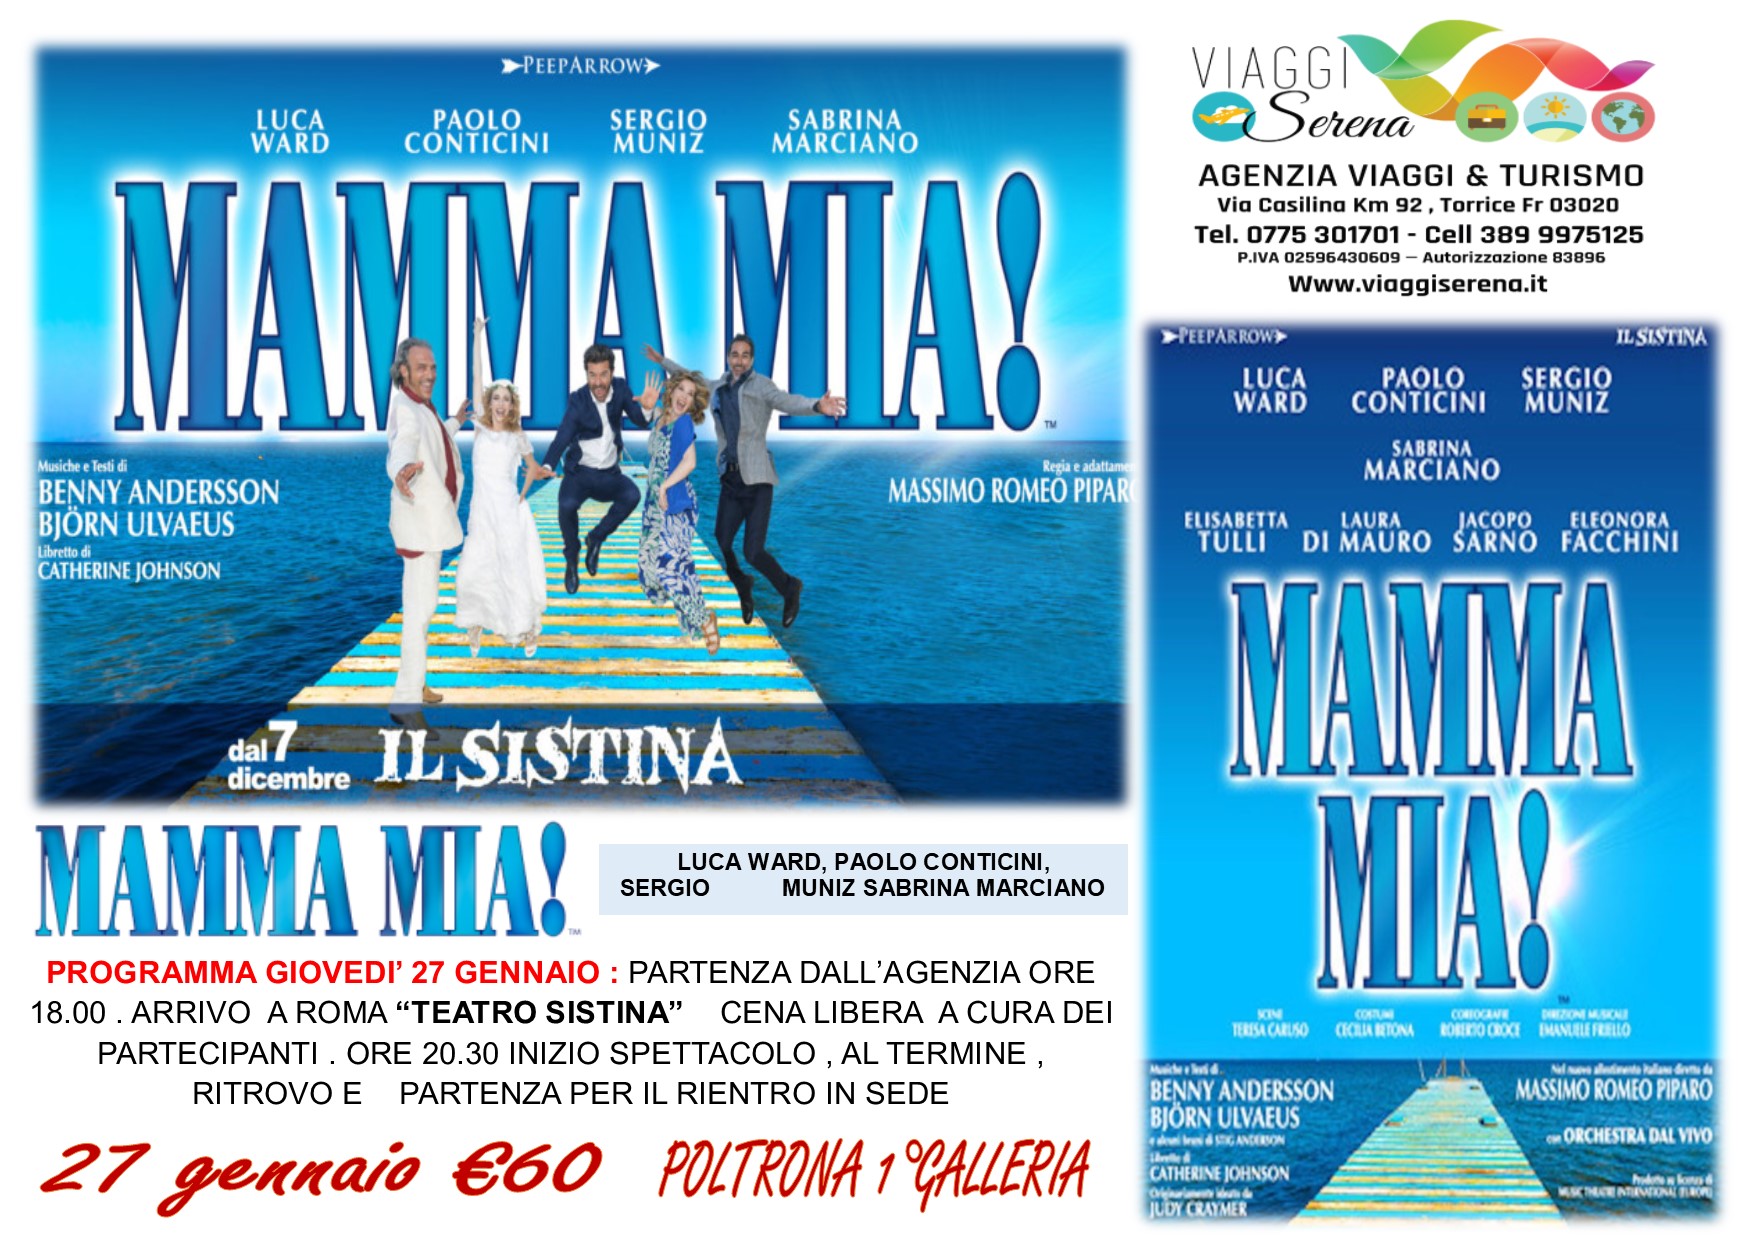 Viaggi di Gruppo: Teatro Sistina Musical ” MAMMA MIA” 27 Gennaio € 60,00